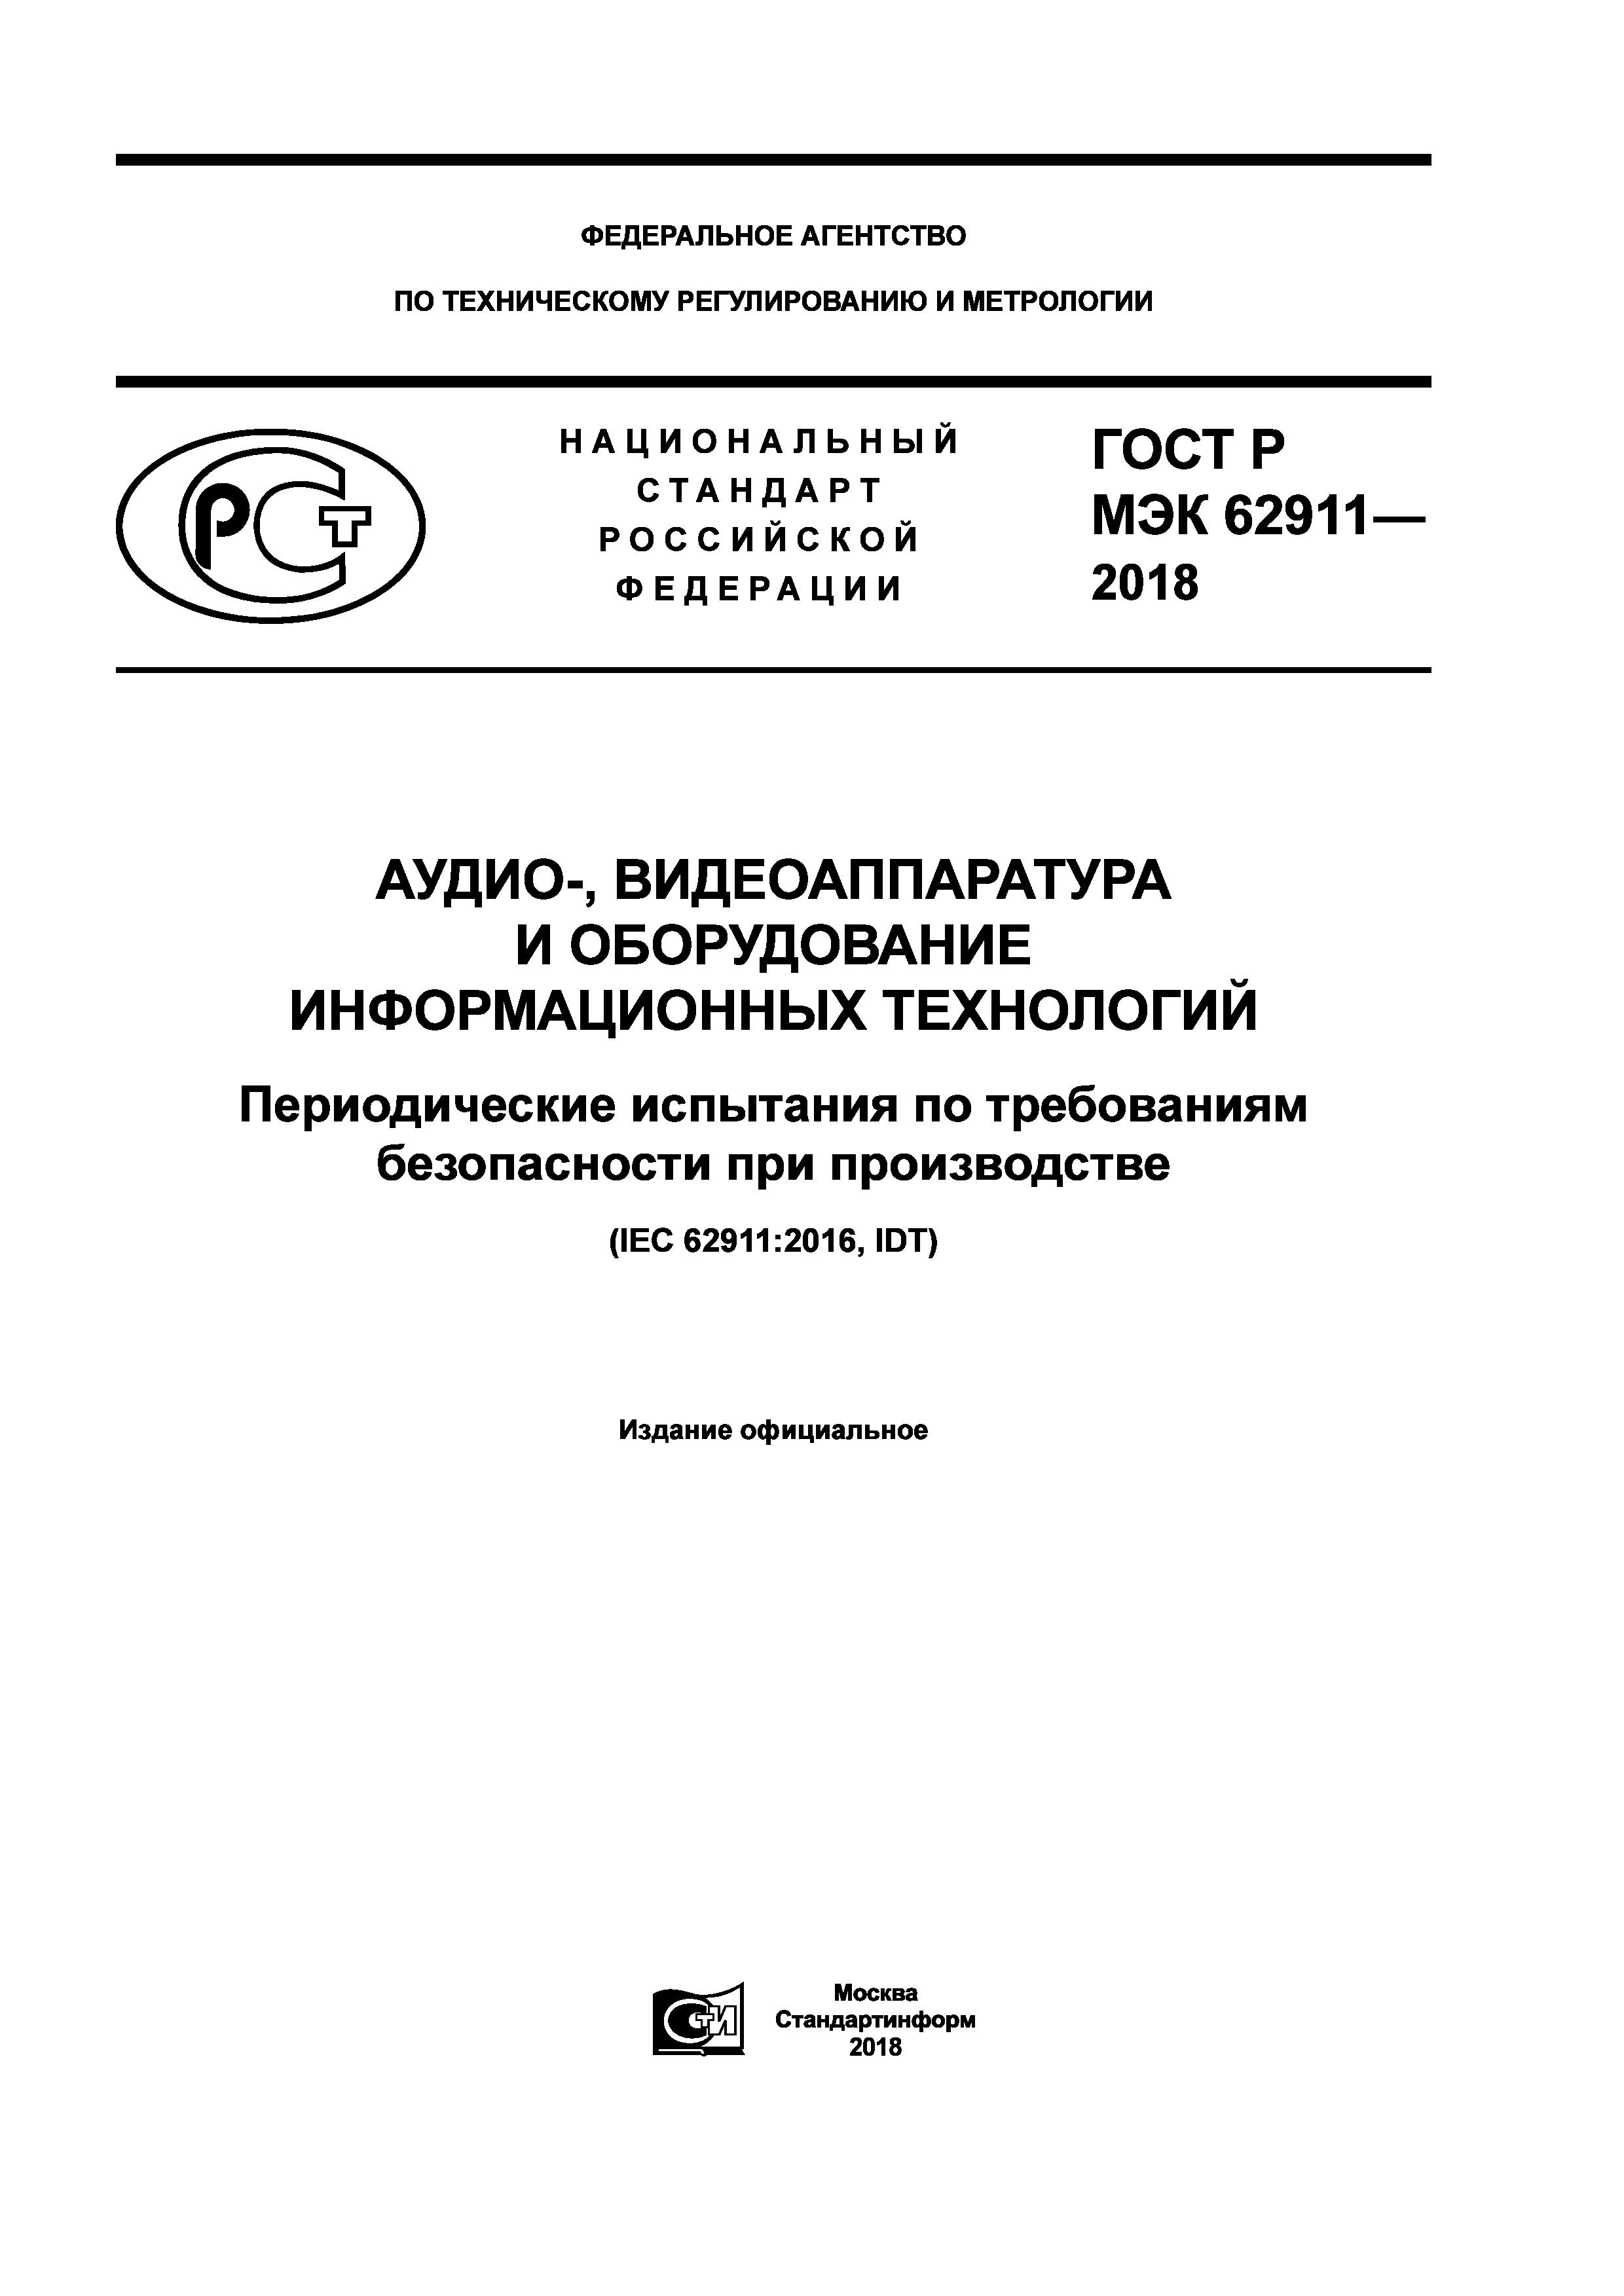 ГОСТ Р МЭК 62911-2018